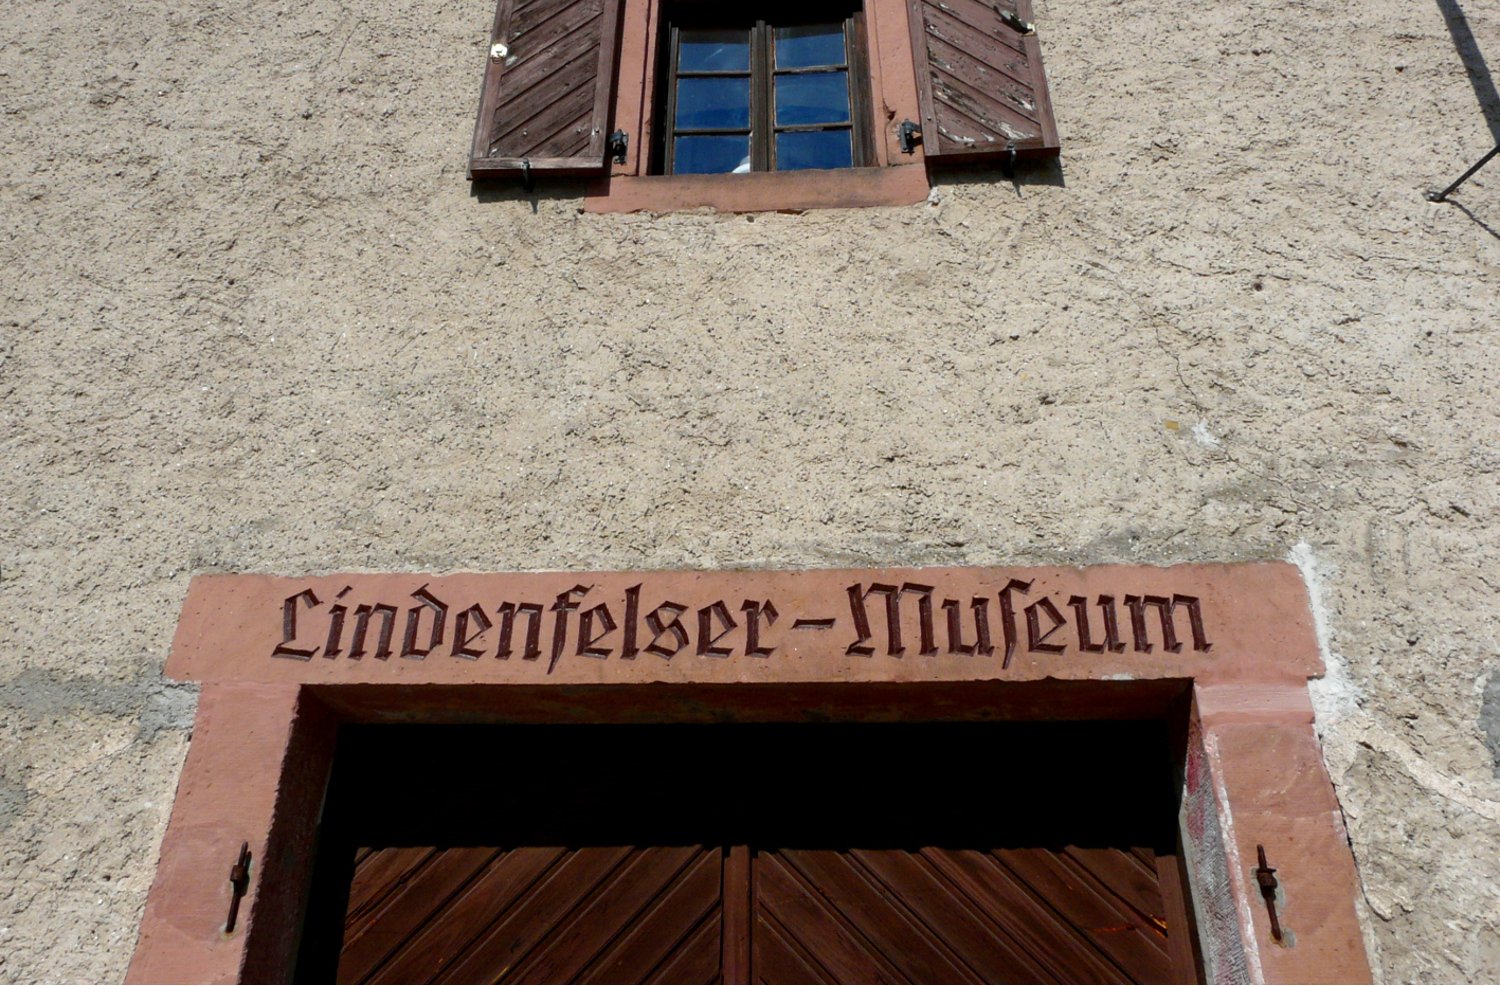 Lindenfelser Museum